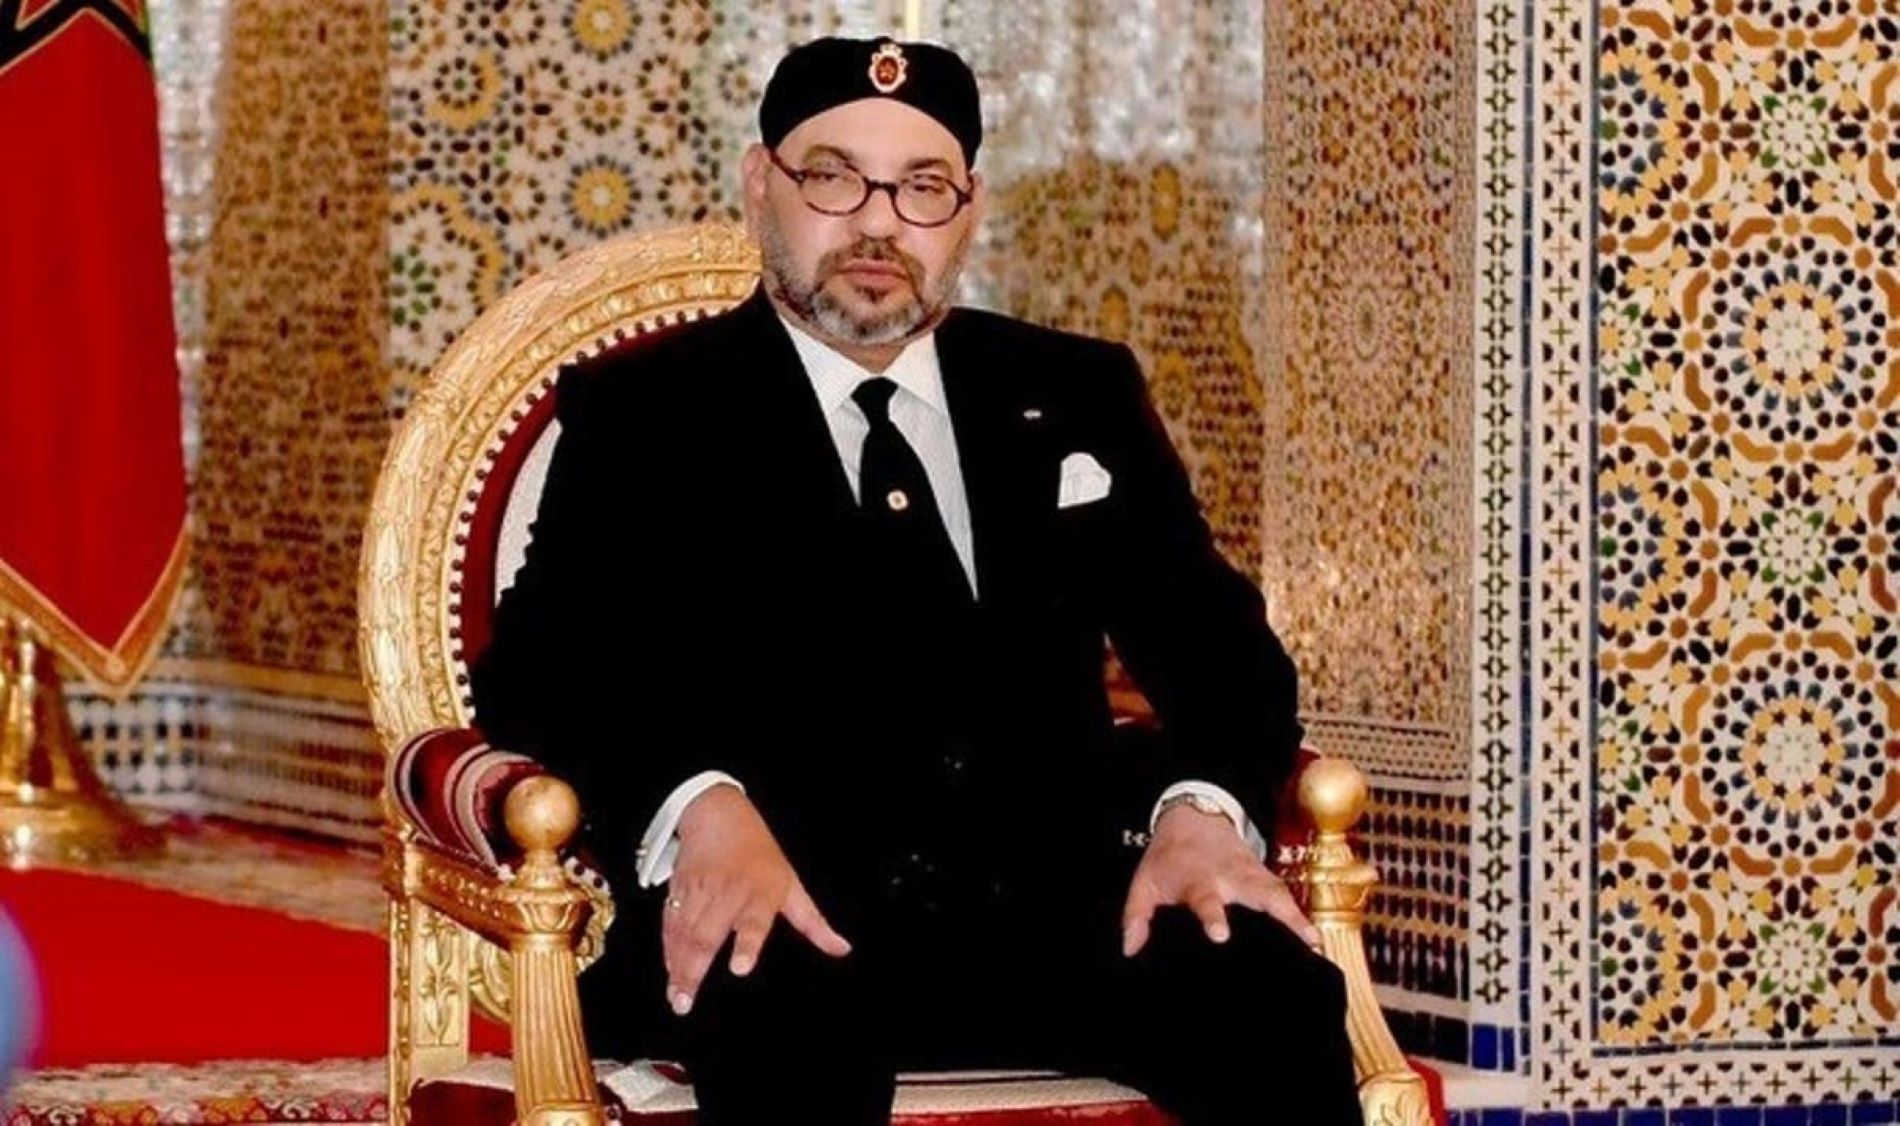 Mohamed VI de Marruecos es el rey más pijo del mundo: se pasea como Franco